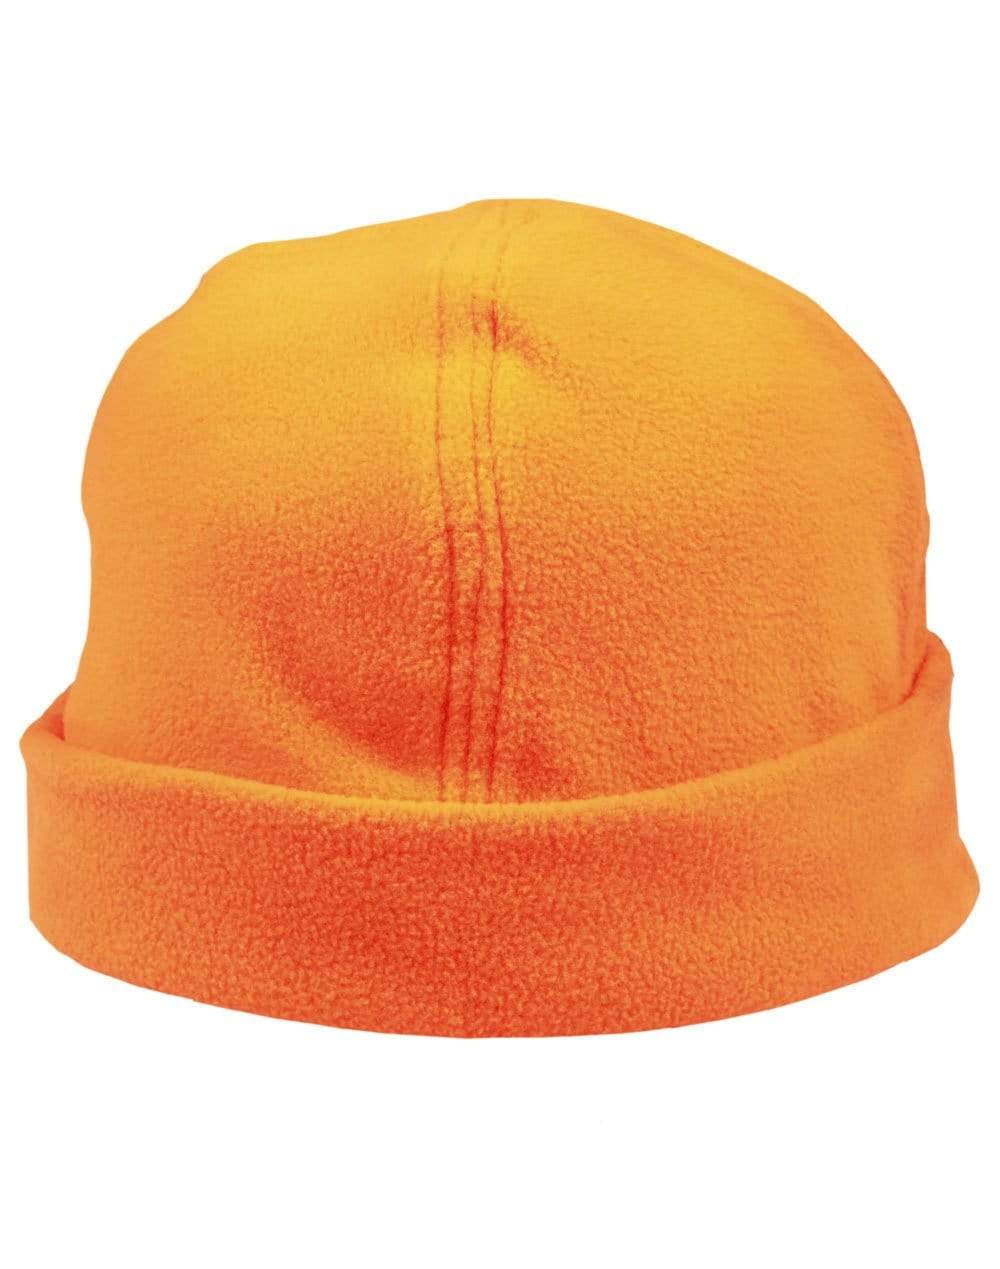 Winning Spirit Active Wear Fluoro Orange / One size fits most Polar Fleece Beanie Ch27